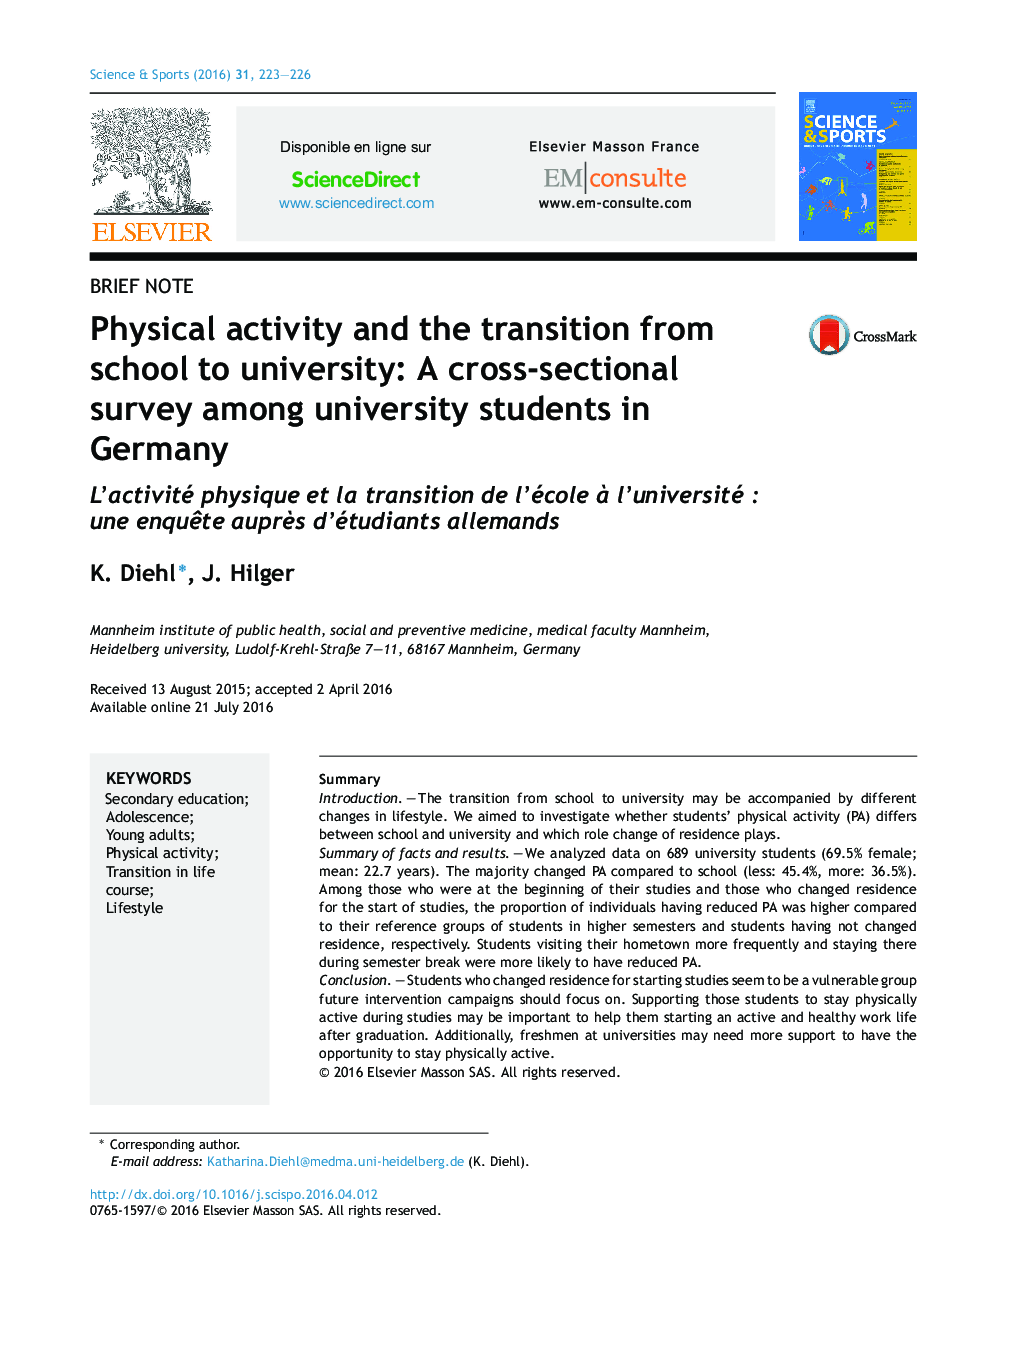 فعالیت فیزیکی و انتقال از مدرسه به دانشگاه: یک بررسی مقطعی در میان دانشجویان دانشگاه در آلمان 